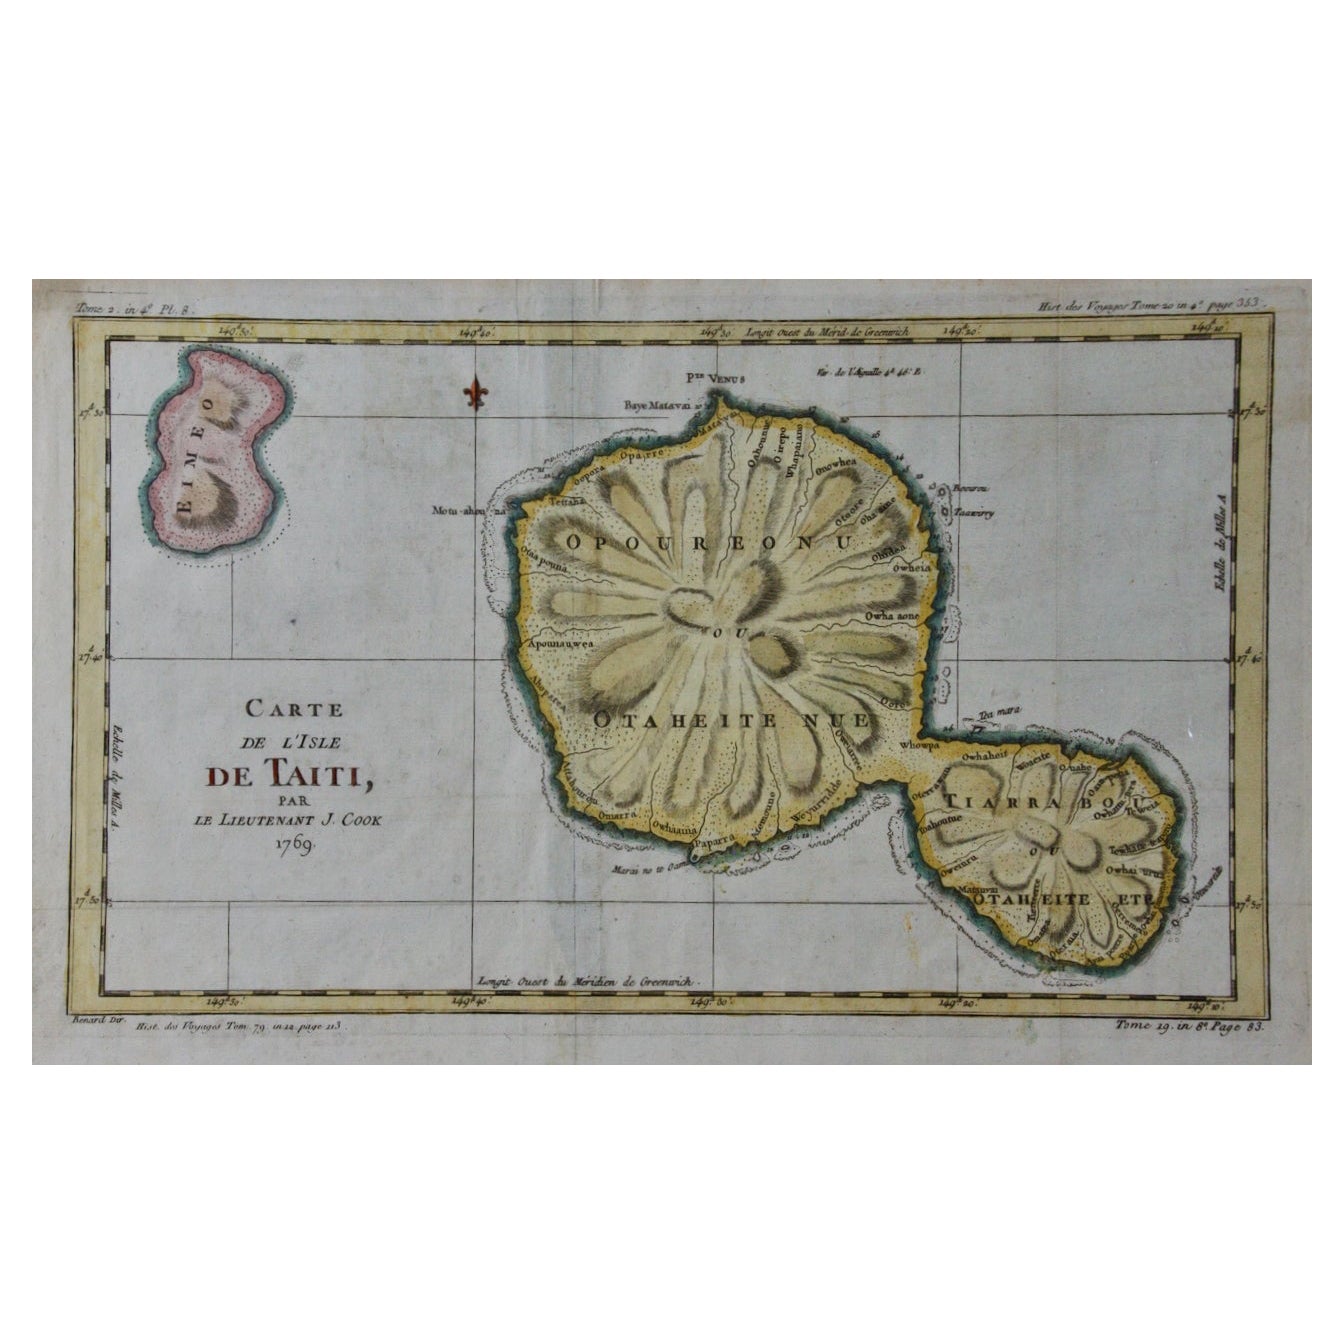 L'exploration du capitaine Cook de Tahiti 18e siècle, carte colorée à la main par Bellin